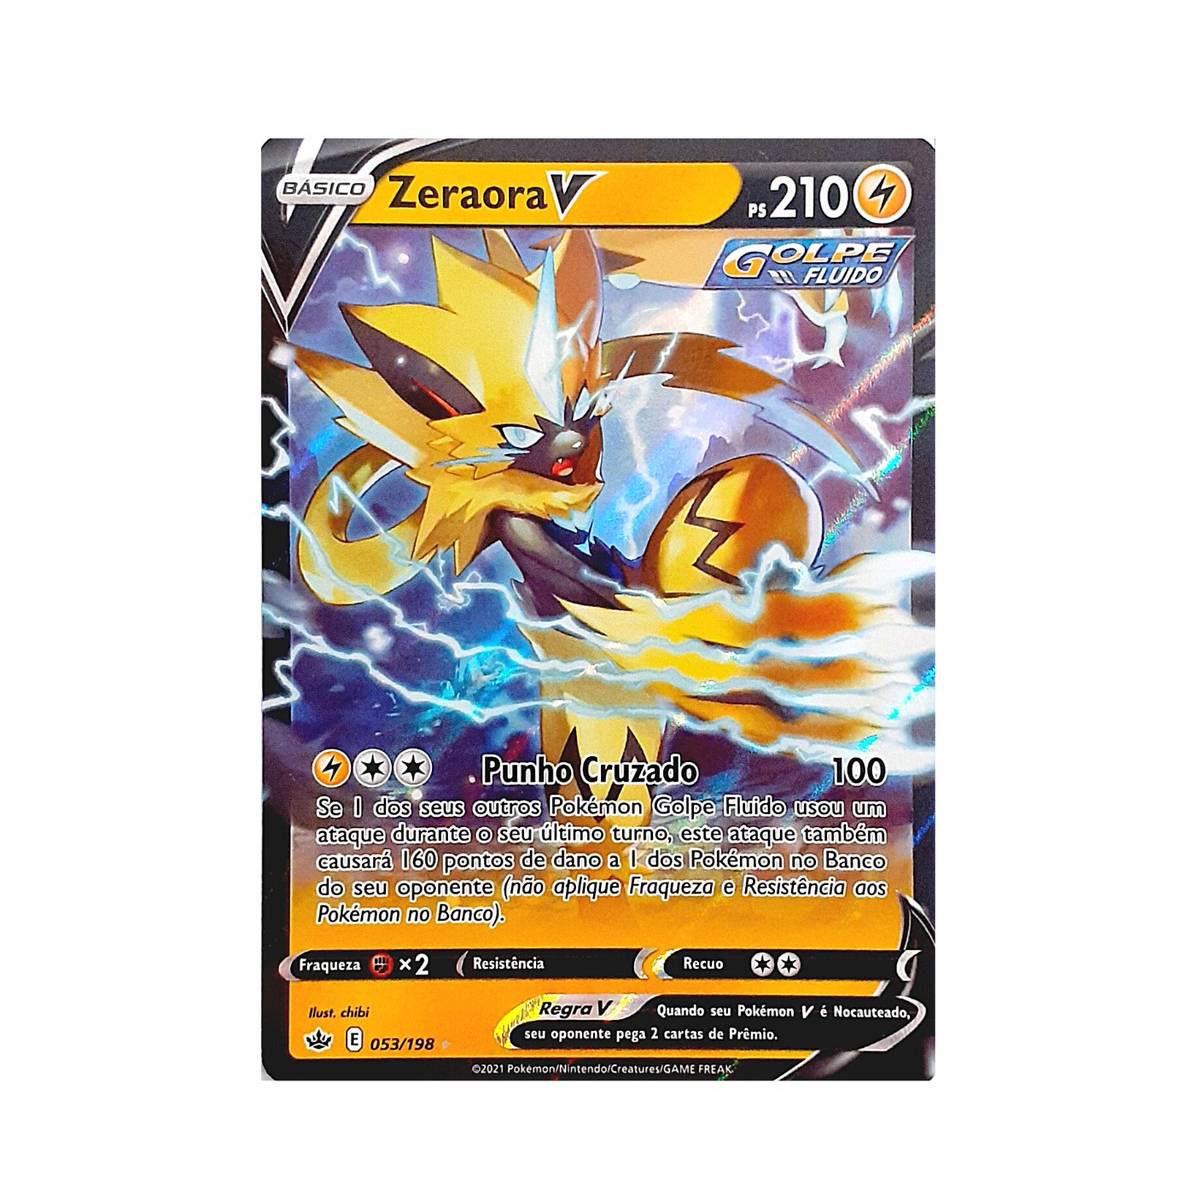 Lata Pokémon - Evolução Eevee - Vaporeon V Card Game Copag